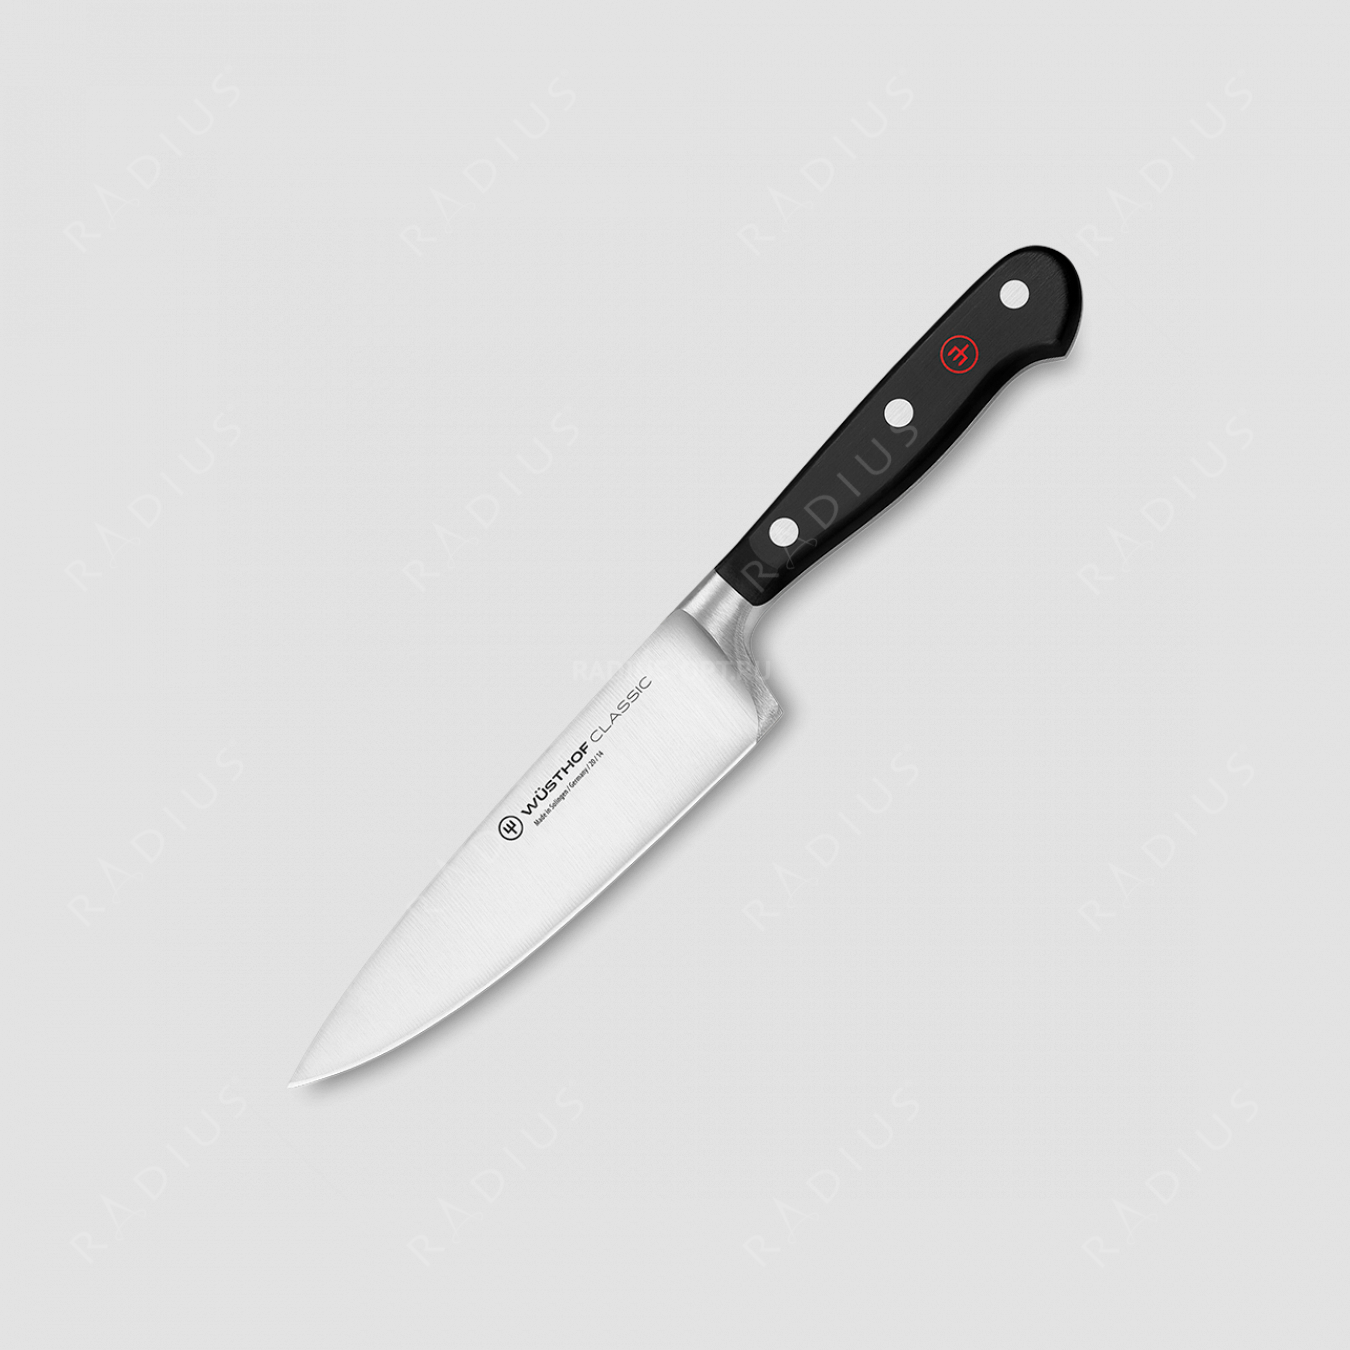 Профессиональный поварской кухонный нож 14 см, серия Classic, WUESTHOF, Золинген, Германия